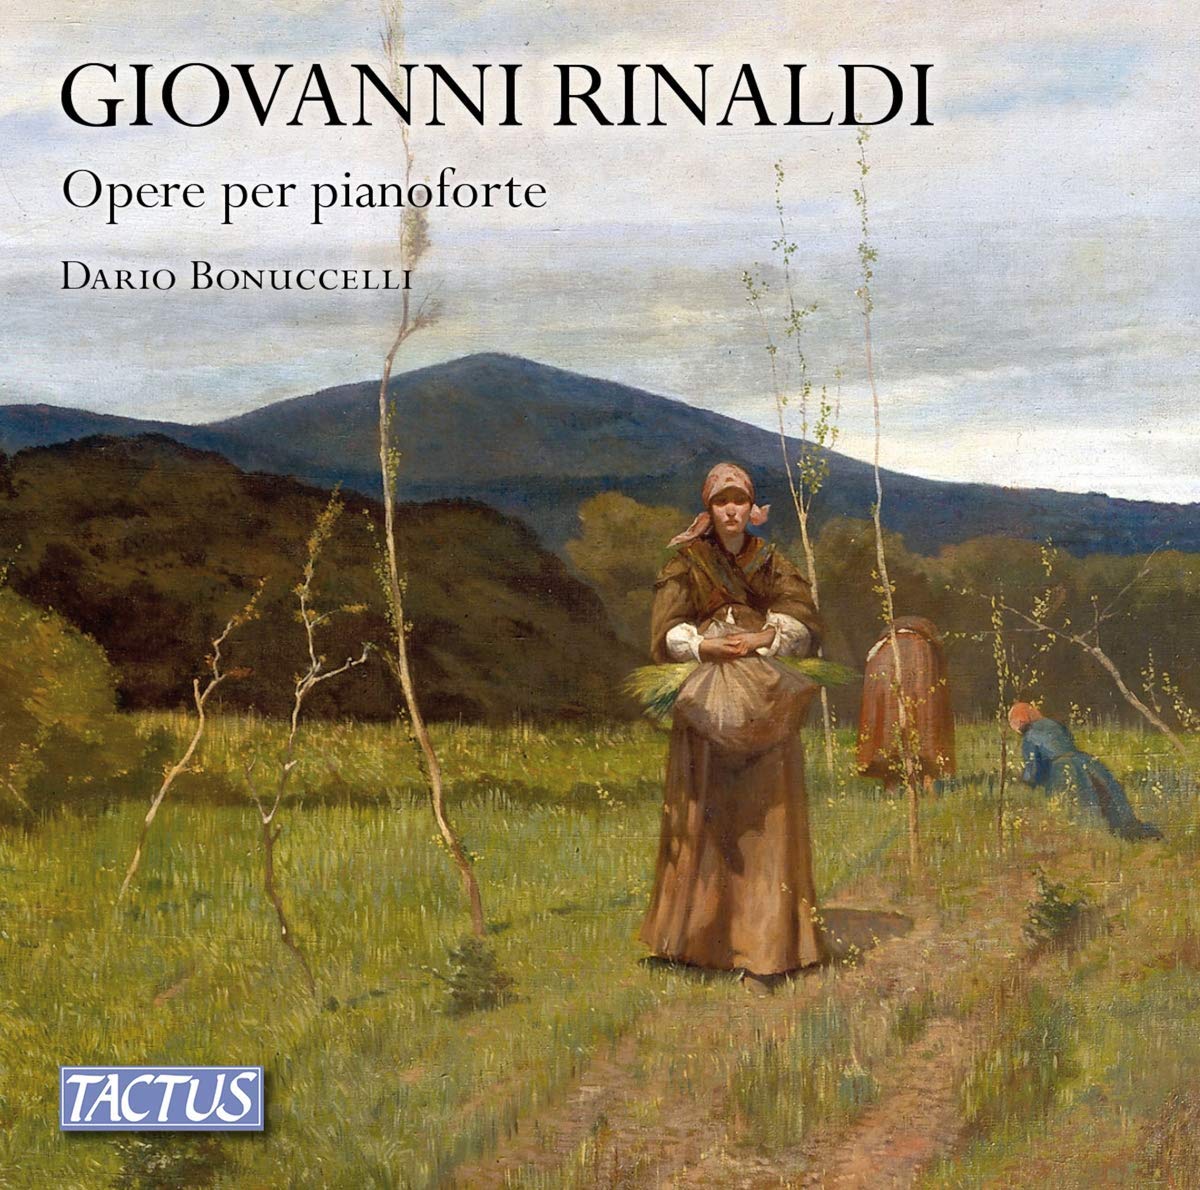 Audio Cd Dario Bonuccelli - Opere Per Pianoforte (3 Cd) NUOVO SIGILLATO, EDIZIONE DEL 26/06/2019 SUBITO DISPONIBILE